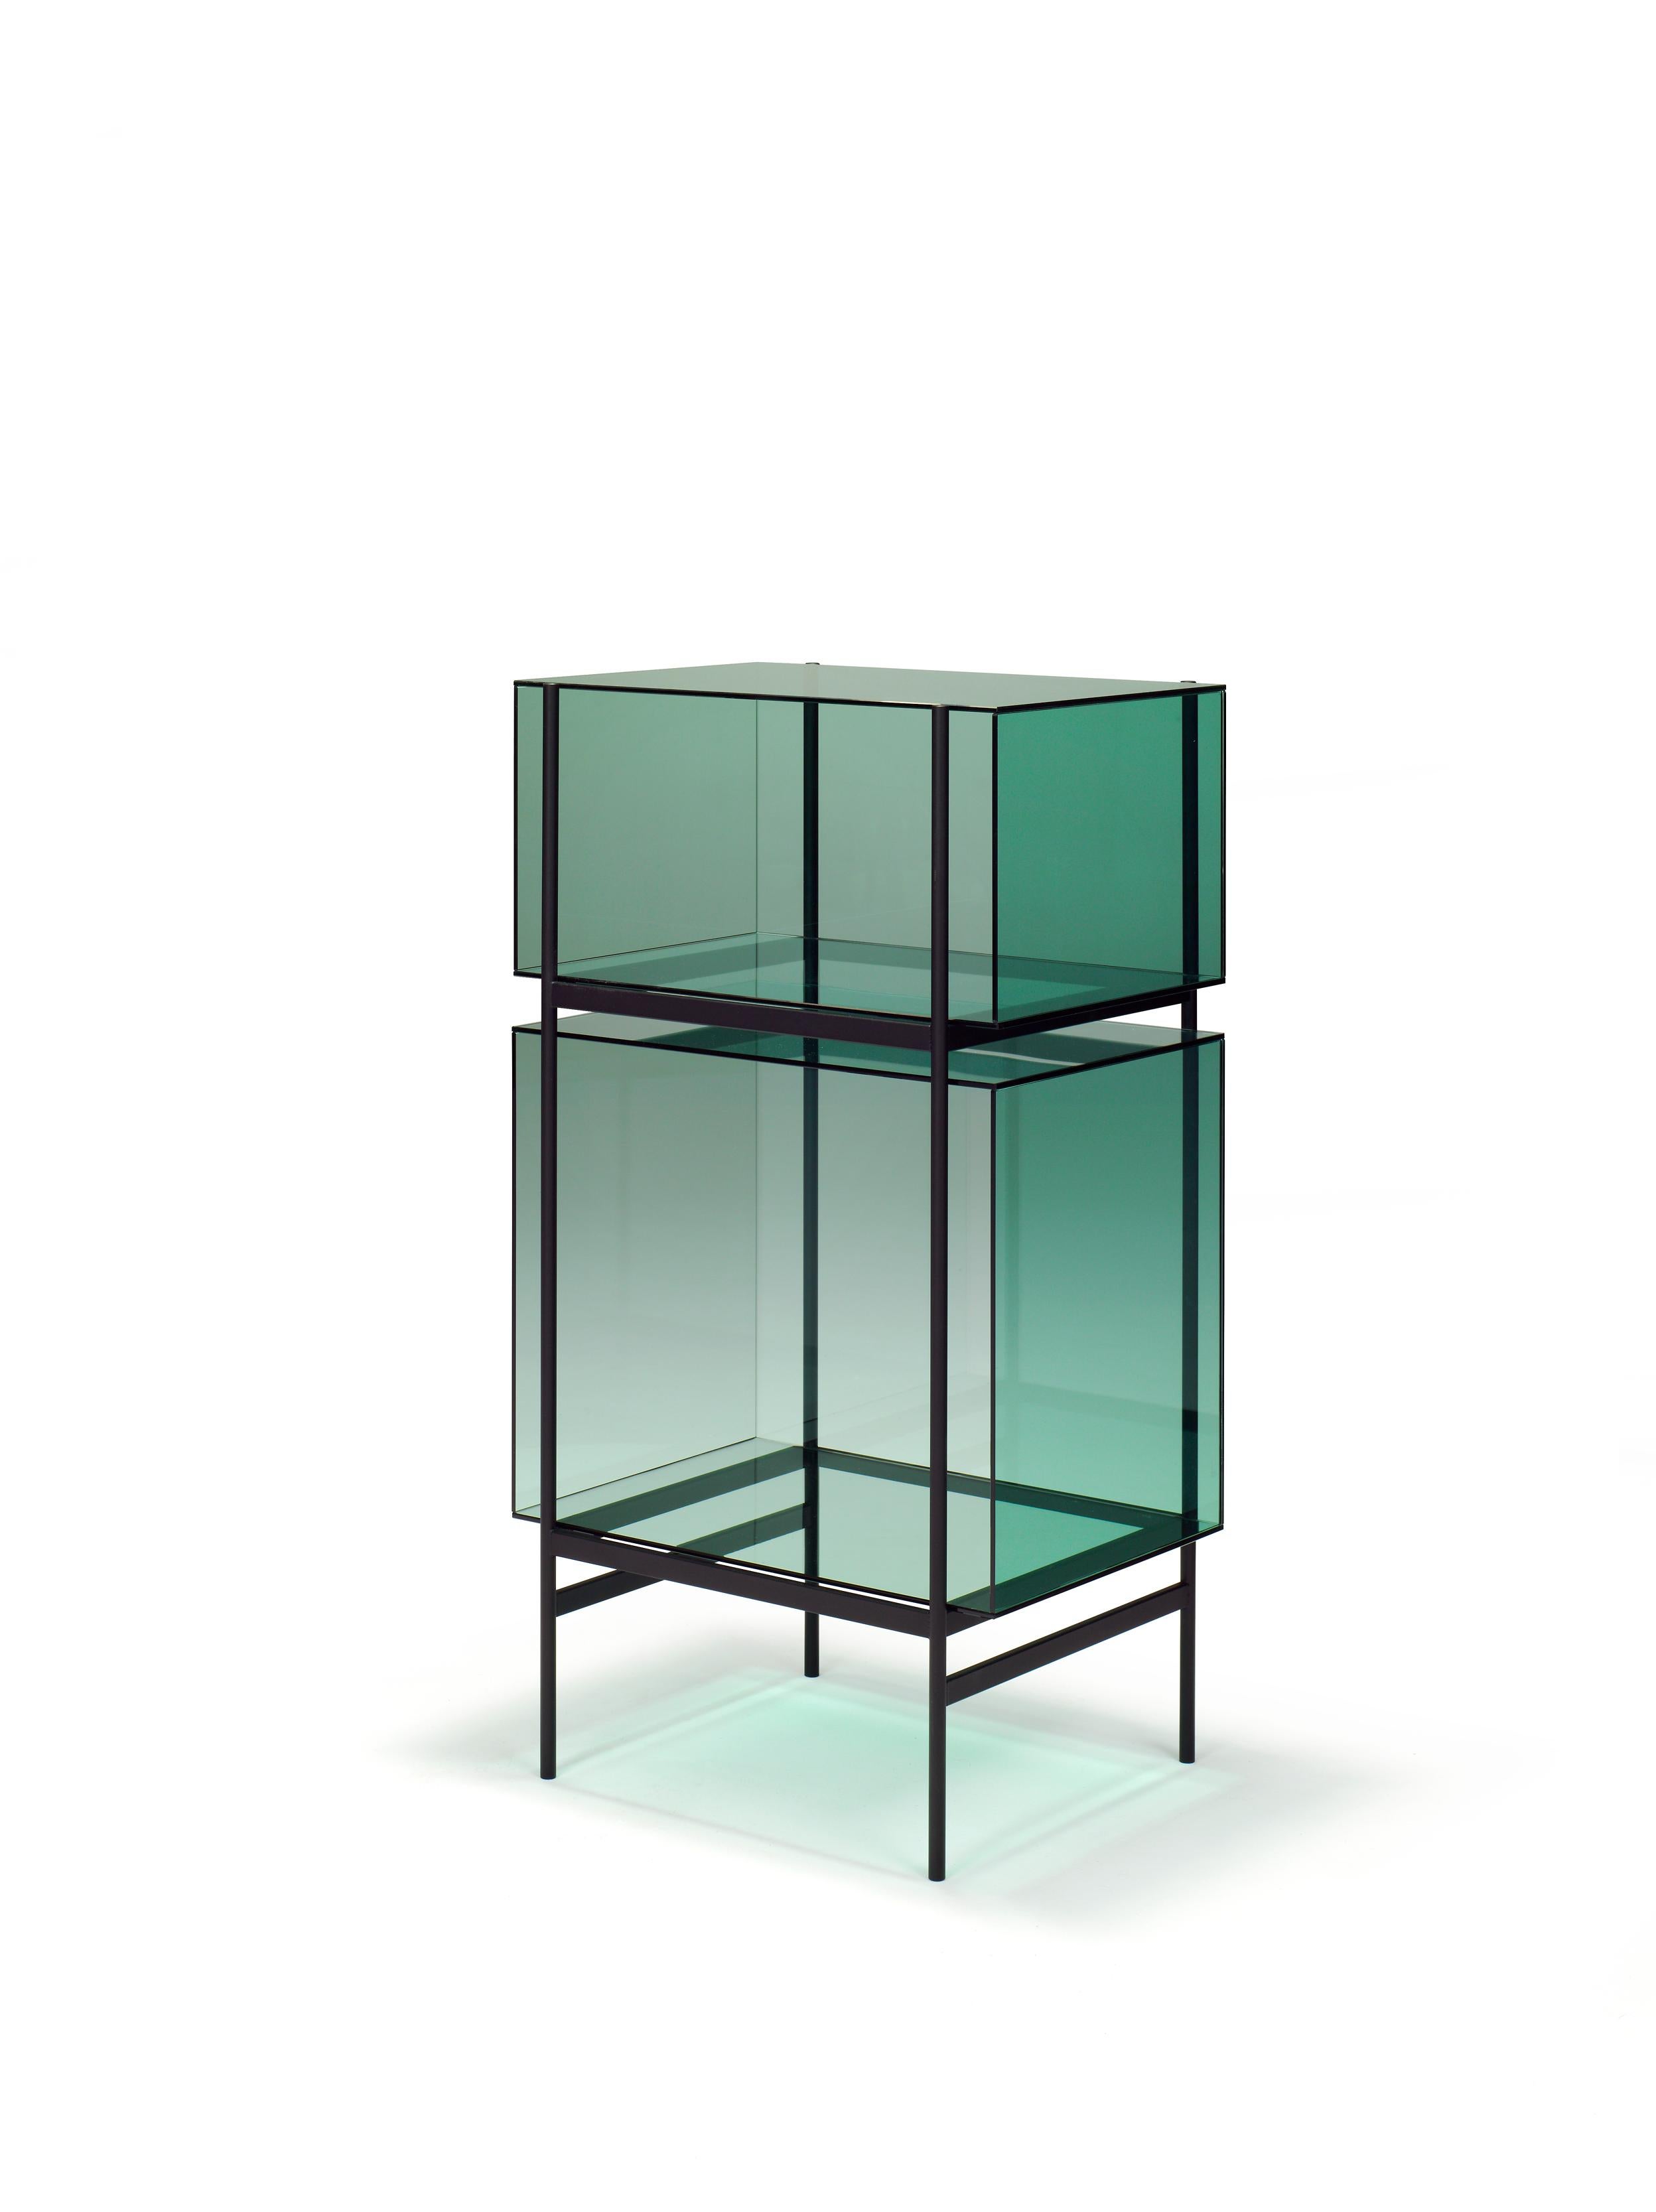 Lyn kleiner grüner schwarzer schrank von Pulpo
Abmessungen: T60 x B45 x H110 cm
MATERIALIEN: Glas; pulverbeschichteter Stahl

Auch in verschiedenen Farben erhältlich. 

Das Studio Visser & Meijwaard beschreibt sein Konzept von lyn als 